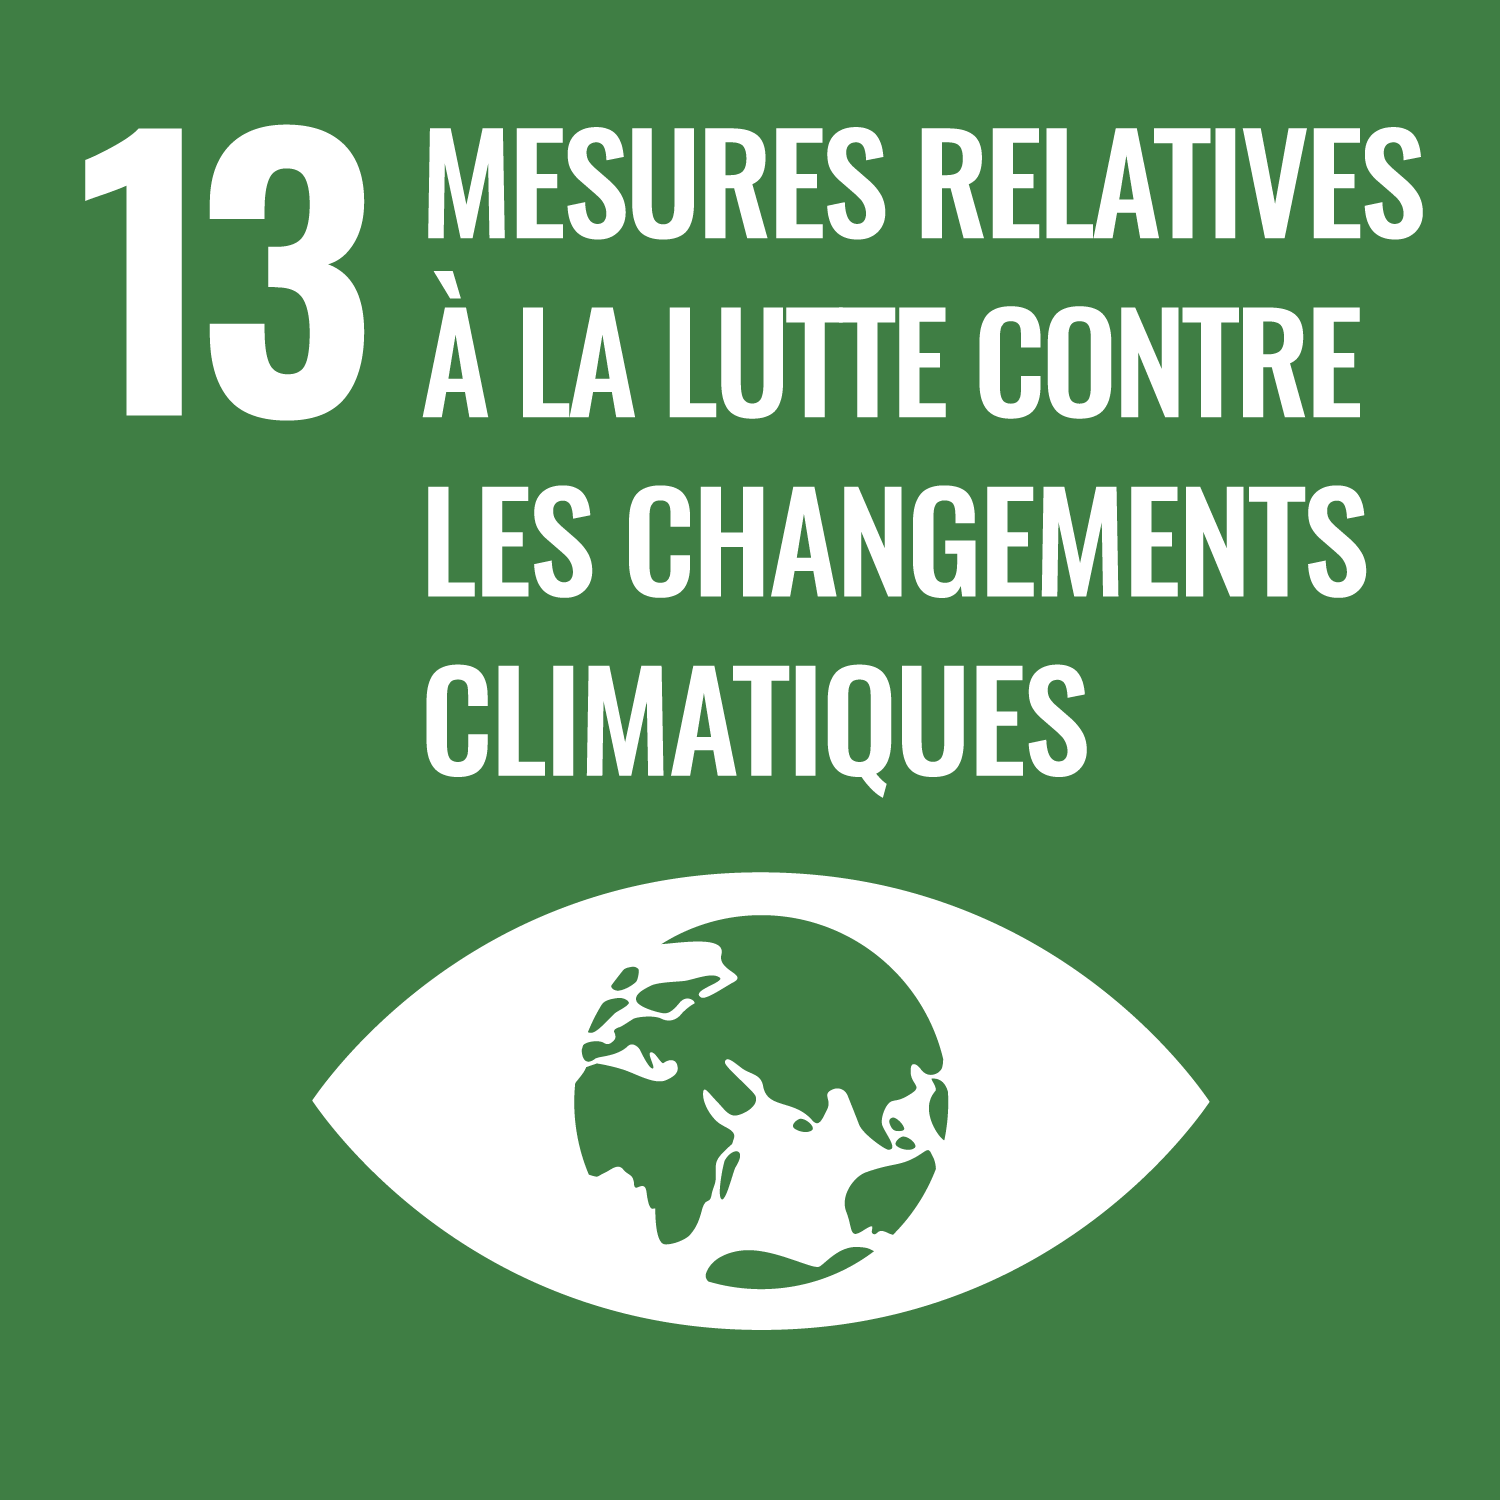 Objectif de Développement Durable de l'O.N.U. 13 : mesures relatives à la lutte contre les changements climatiques